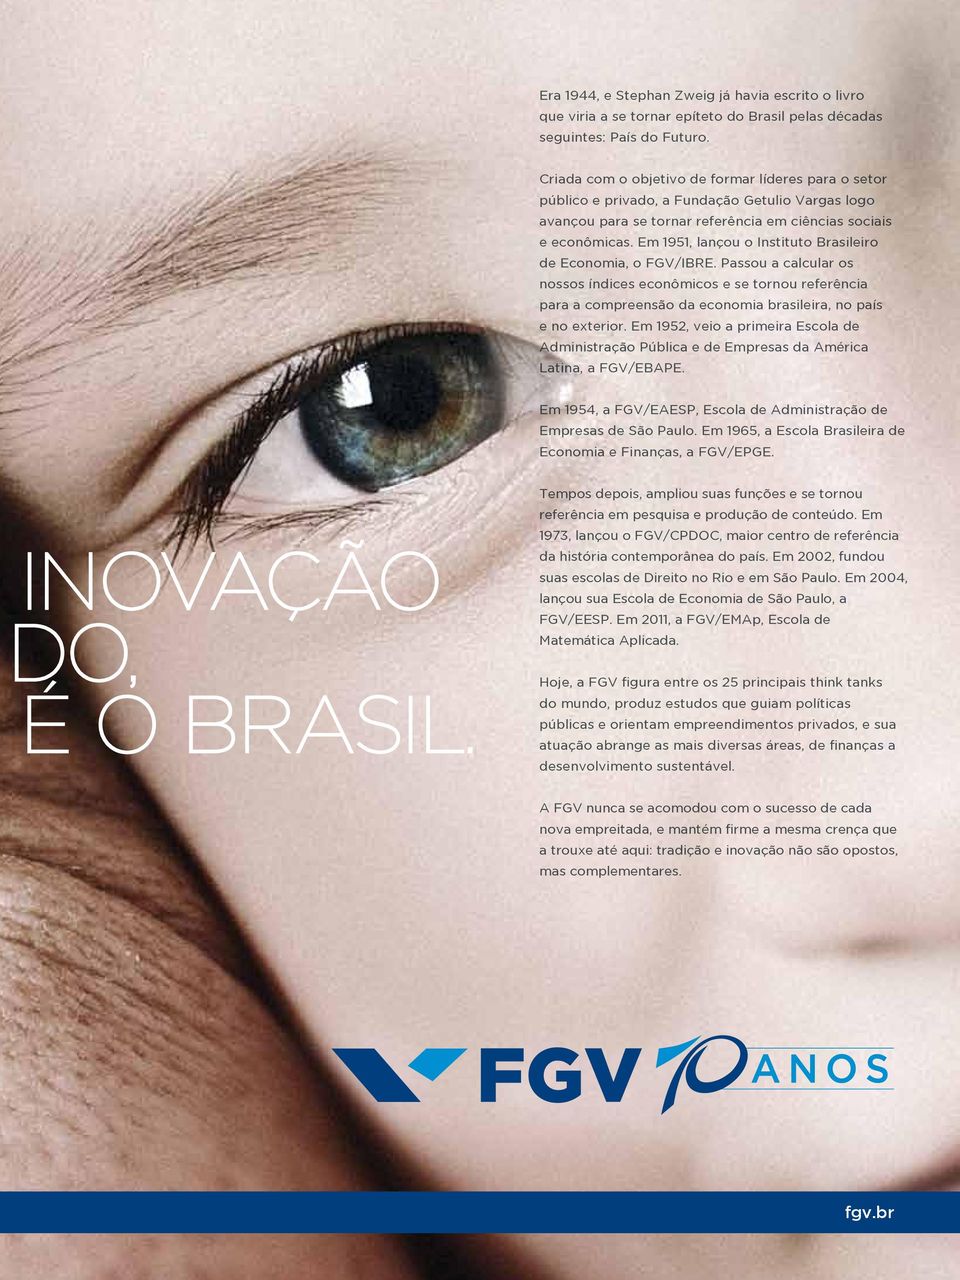 Em 1951, lançou o Instituto Brasileiro de Economia, o FGV/IBRE. Passou a calcular os nossos índices econômicos e se tornou referência para a compreensão da economia brasileira, no país e no exterior.